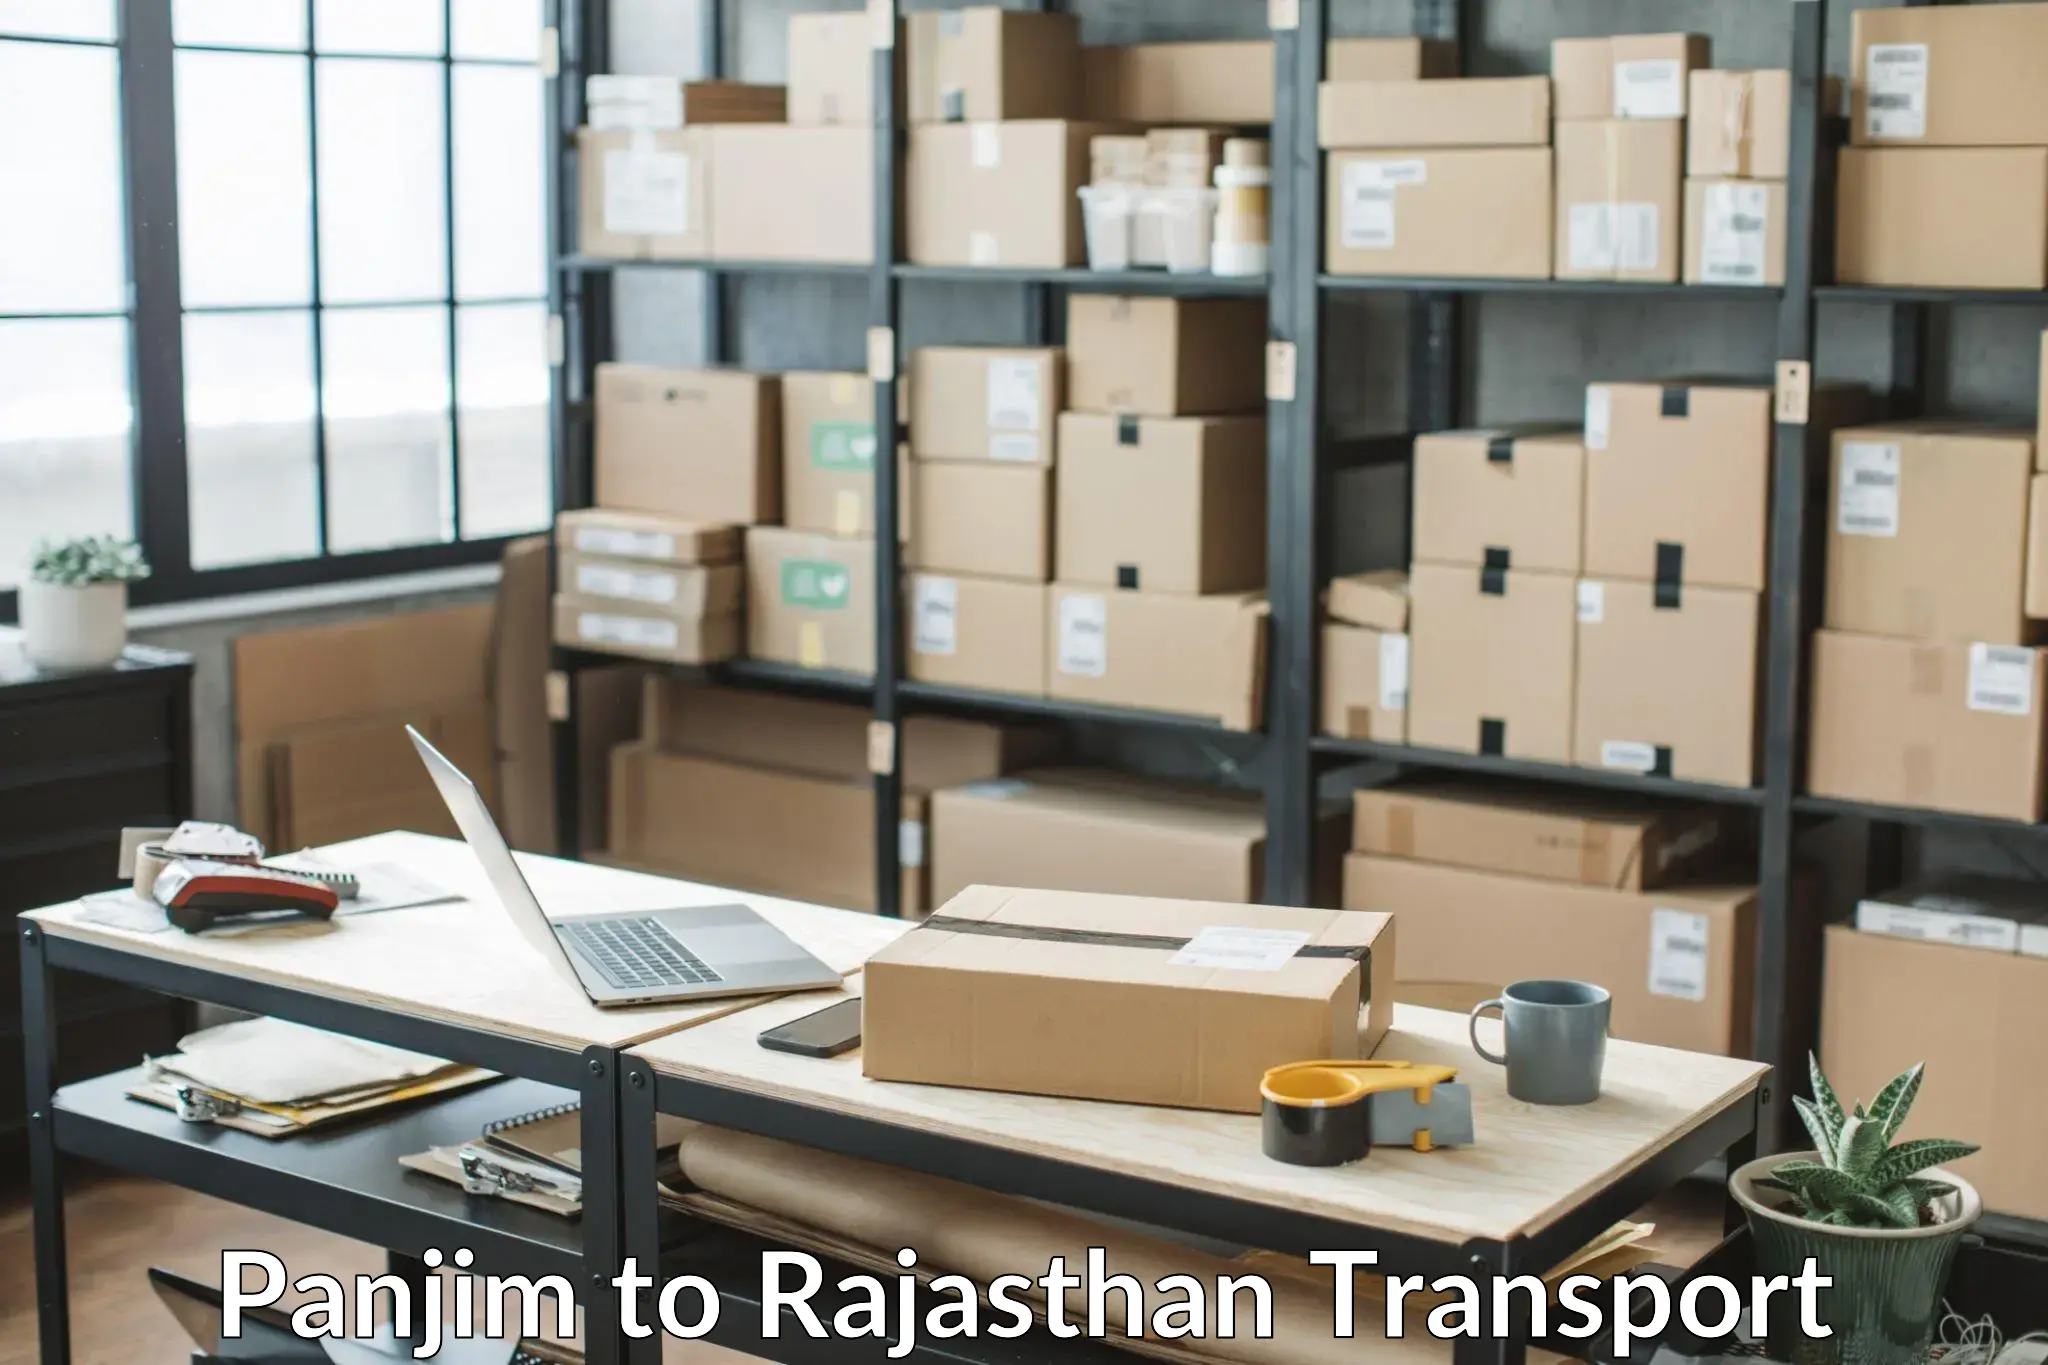 Container transport service Panjim to Sardarshahr